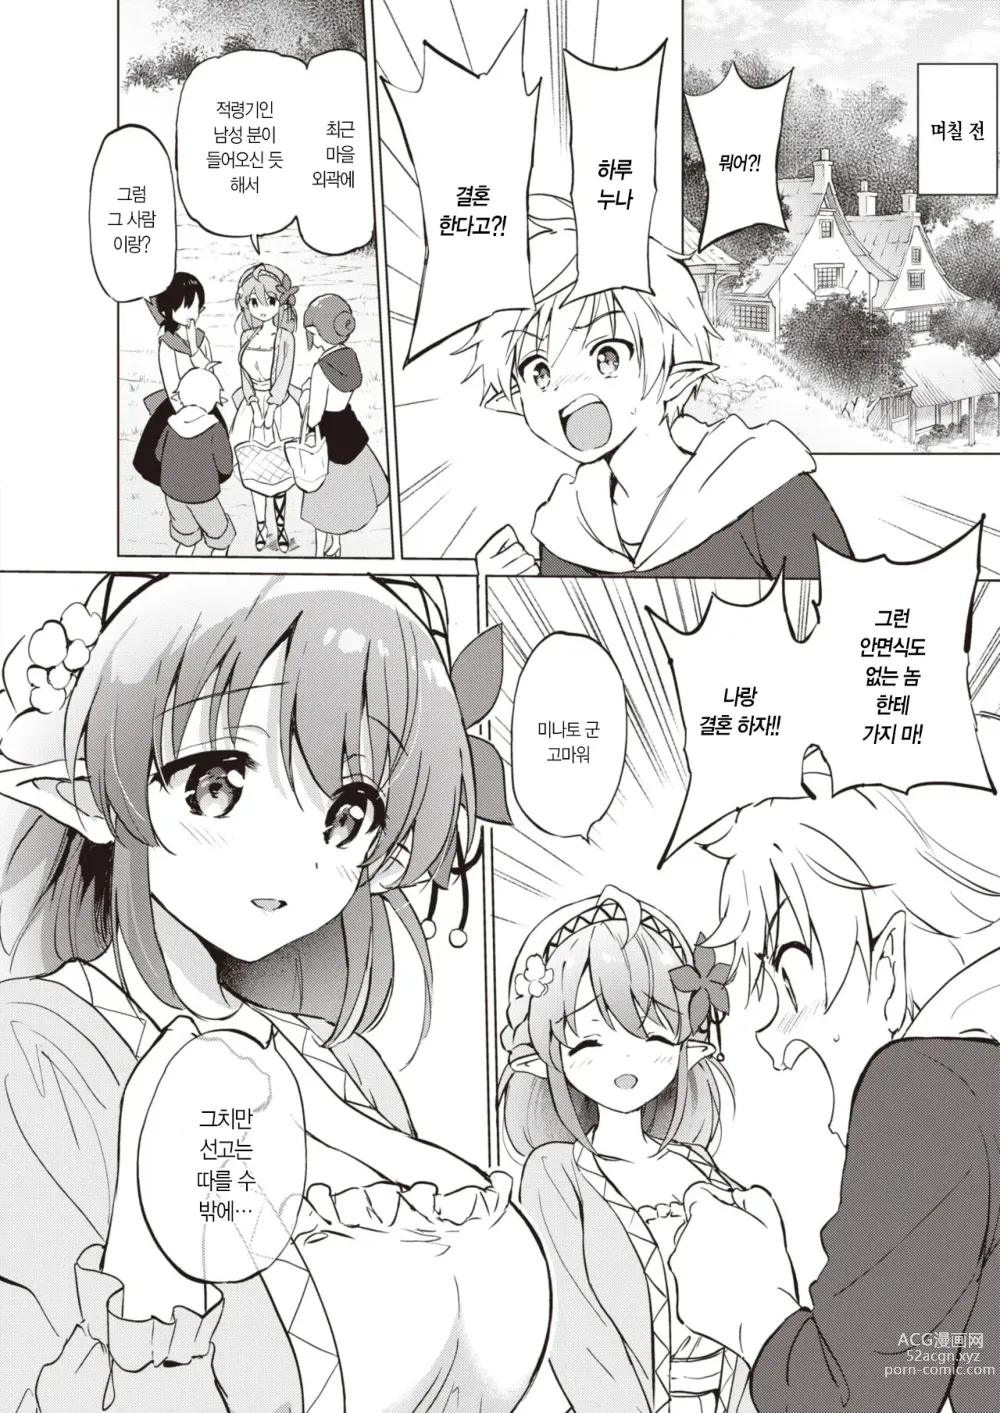 Page 4 of manga 엘프 신부와의 살림살이 0.5+4.5번째